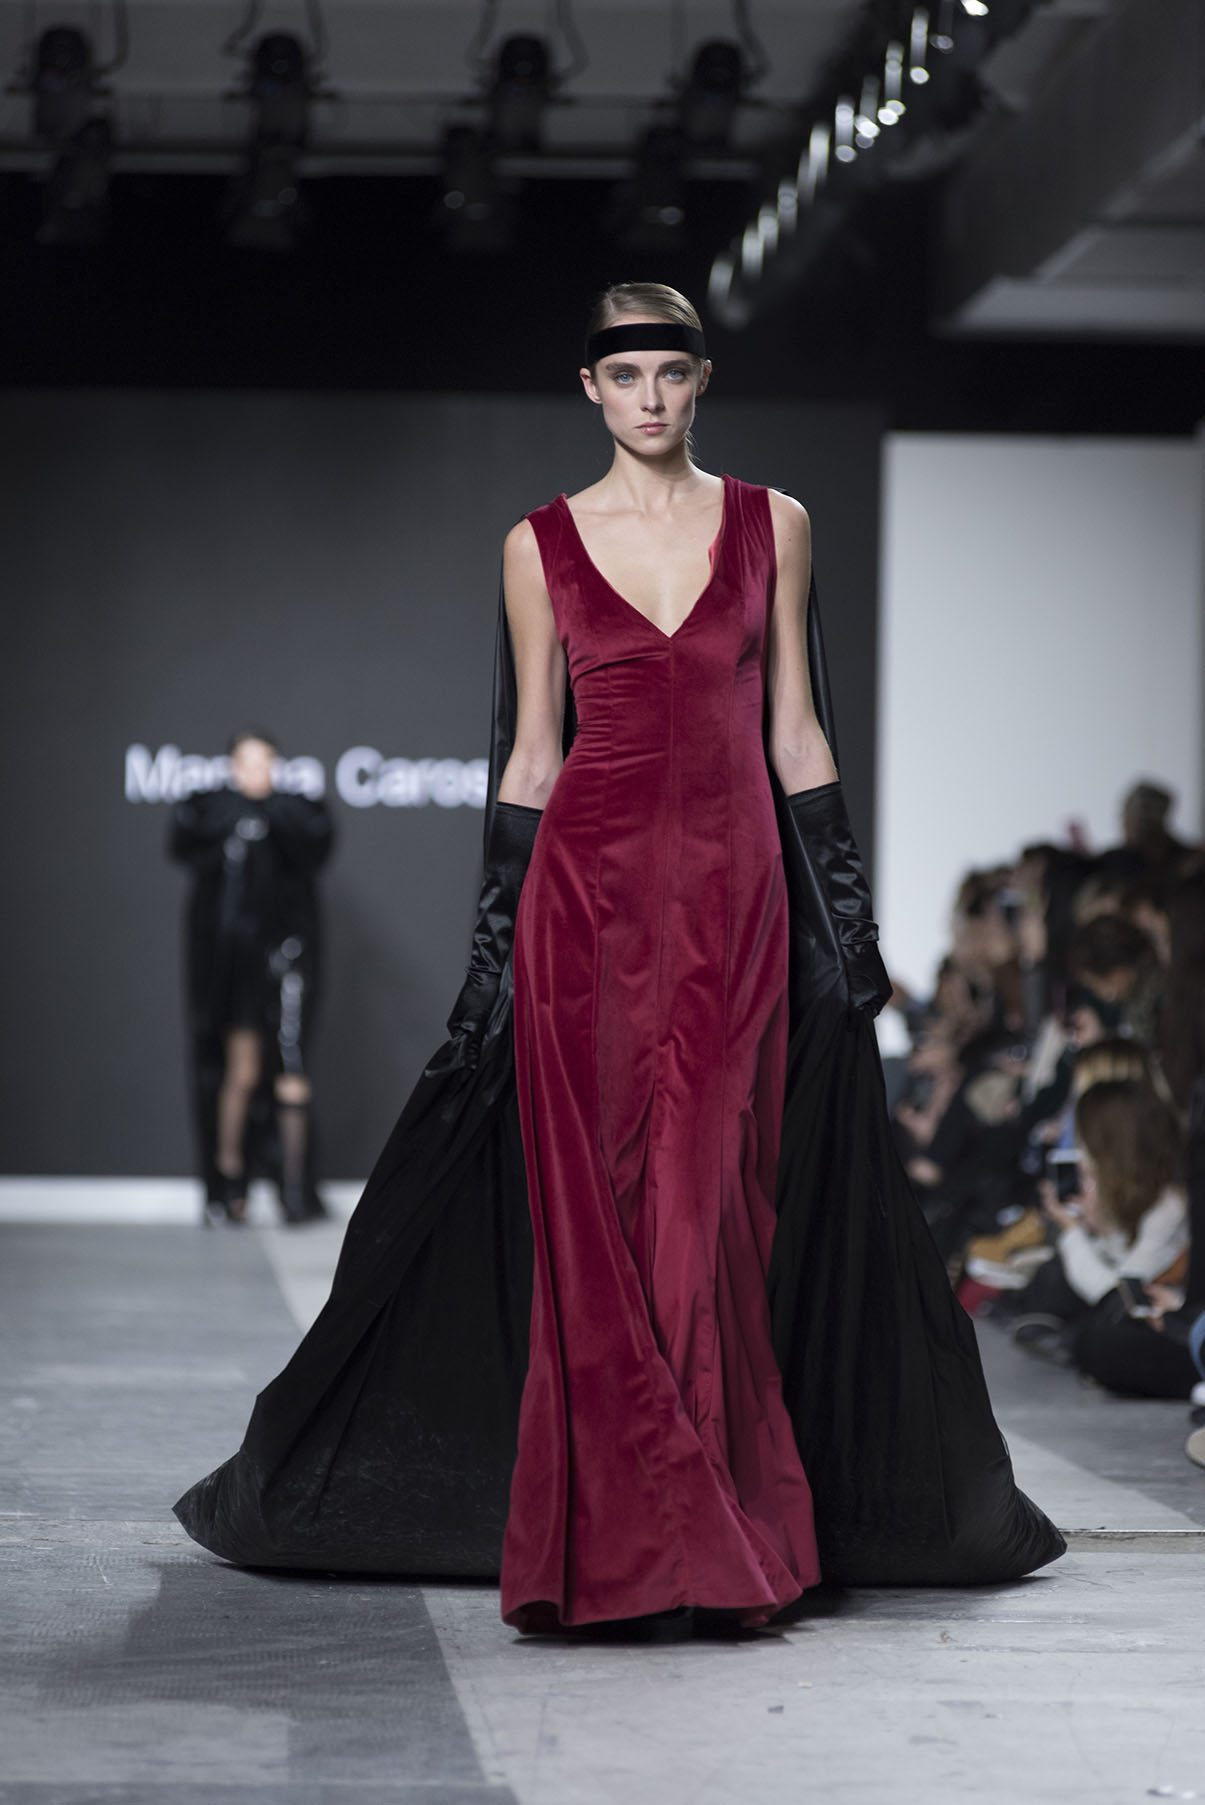 Fashion Designer: Martina Carosella - Fashion Graduate Italia Fashion Show - Accademia di Brera